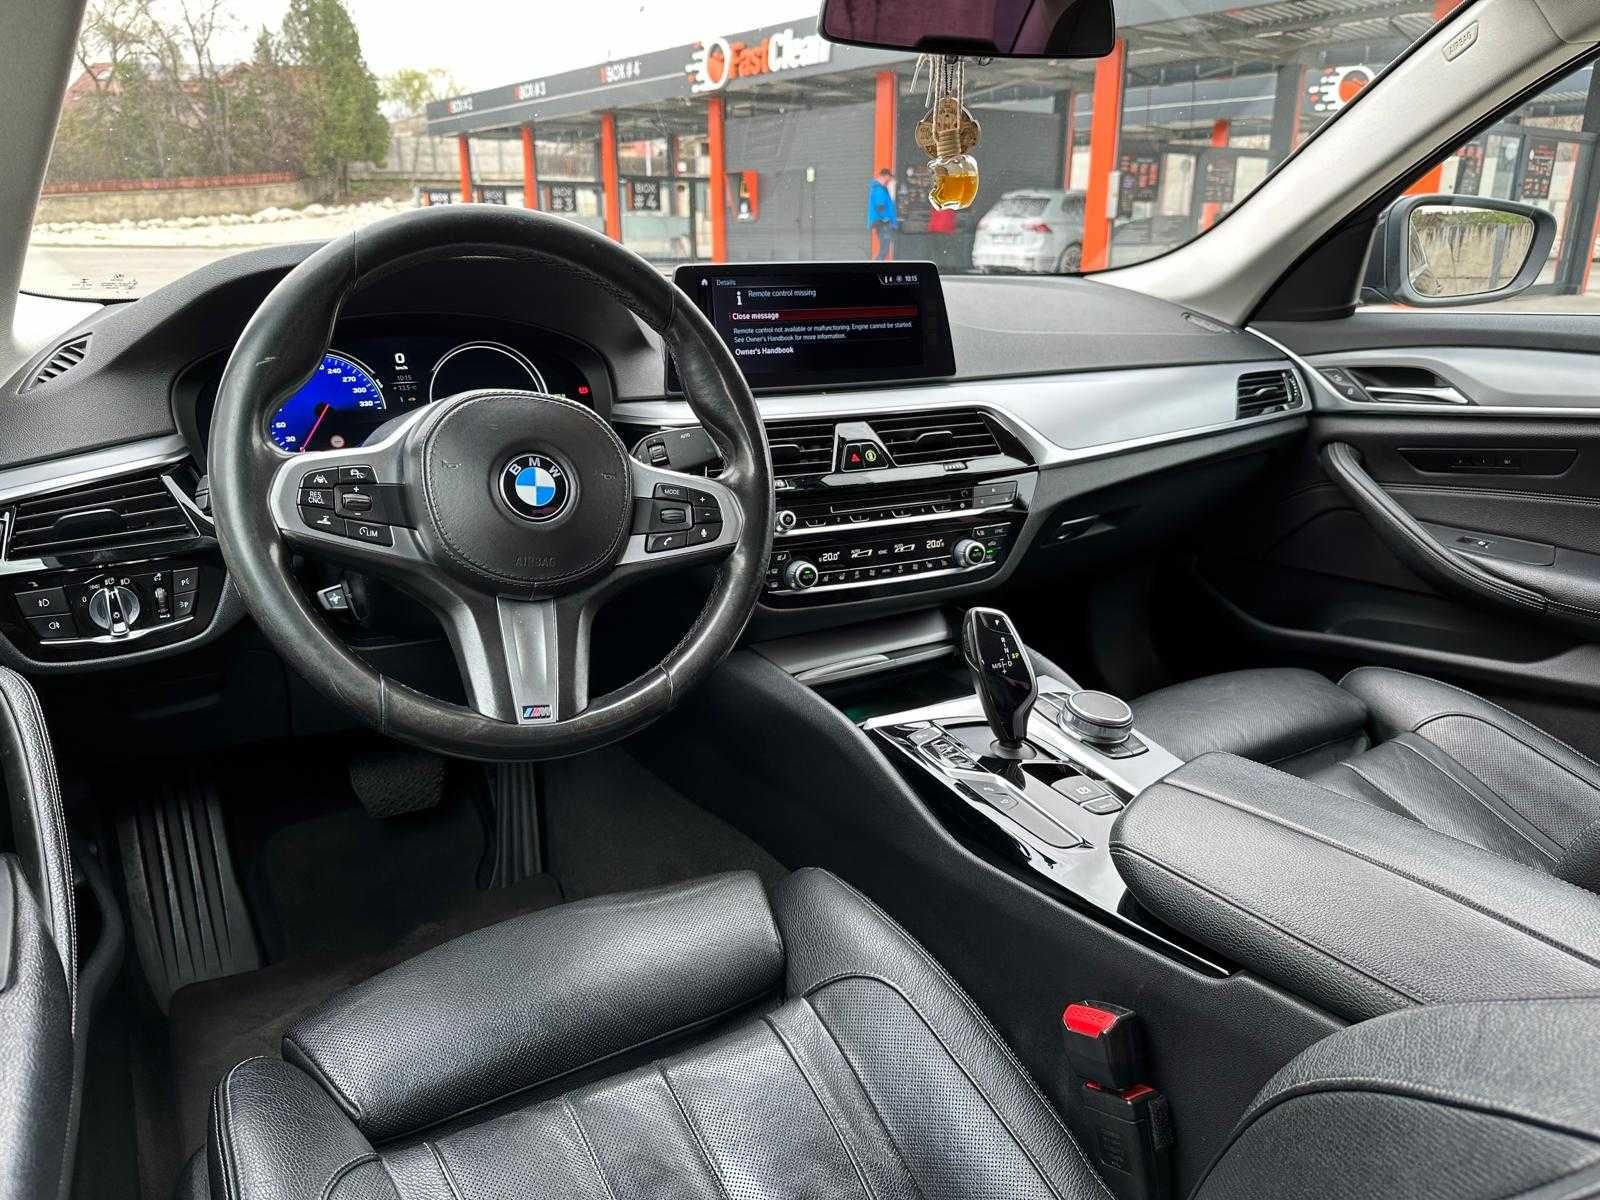 BMW 520d Xdrive Euro 6 Model 2017